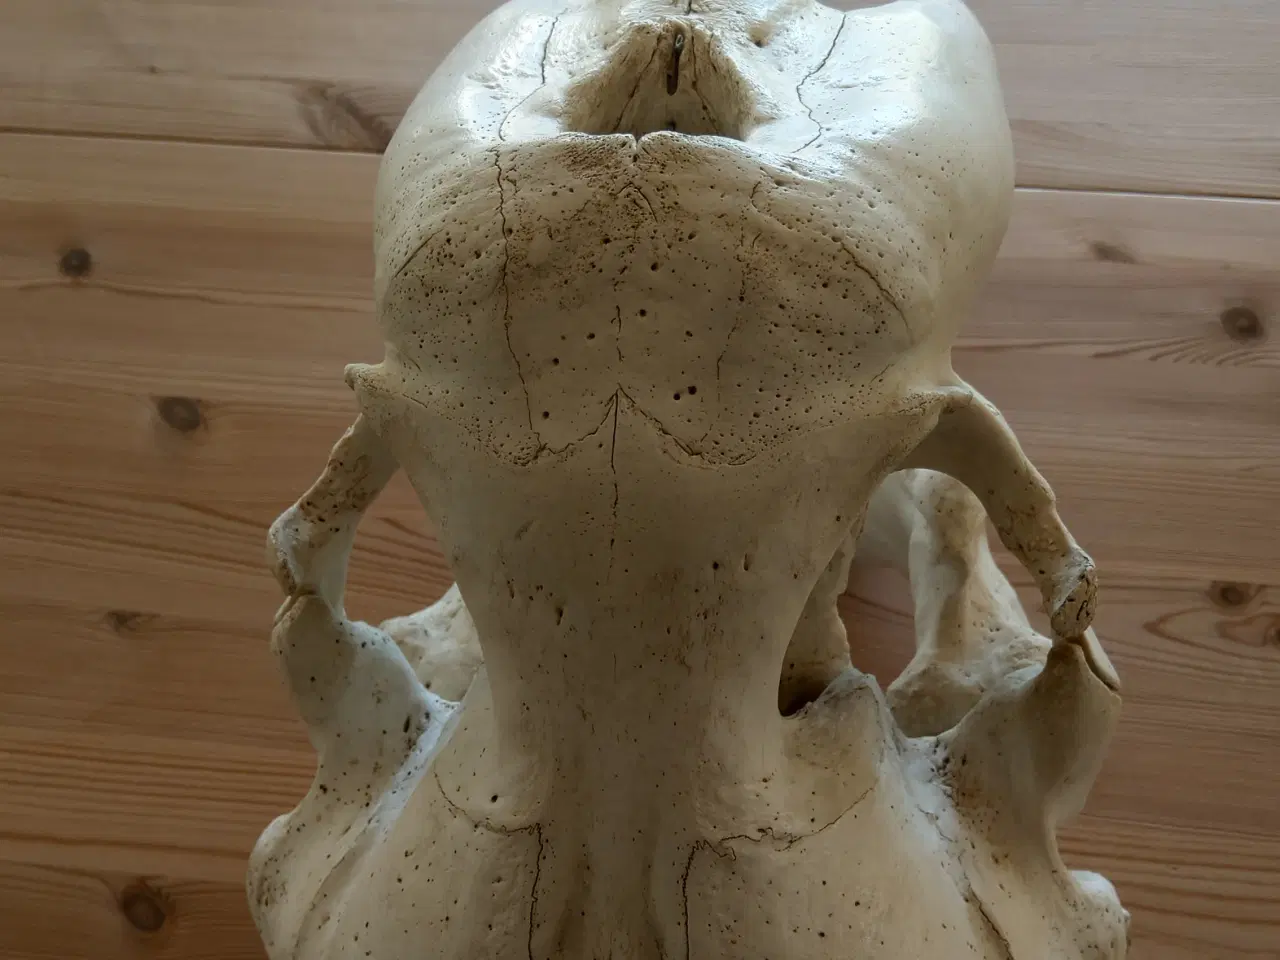 Billede 3 - Hvalroskranie, hvalros, tænder og kranie.